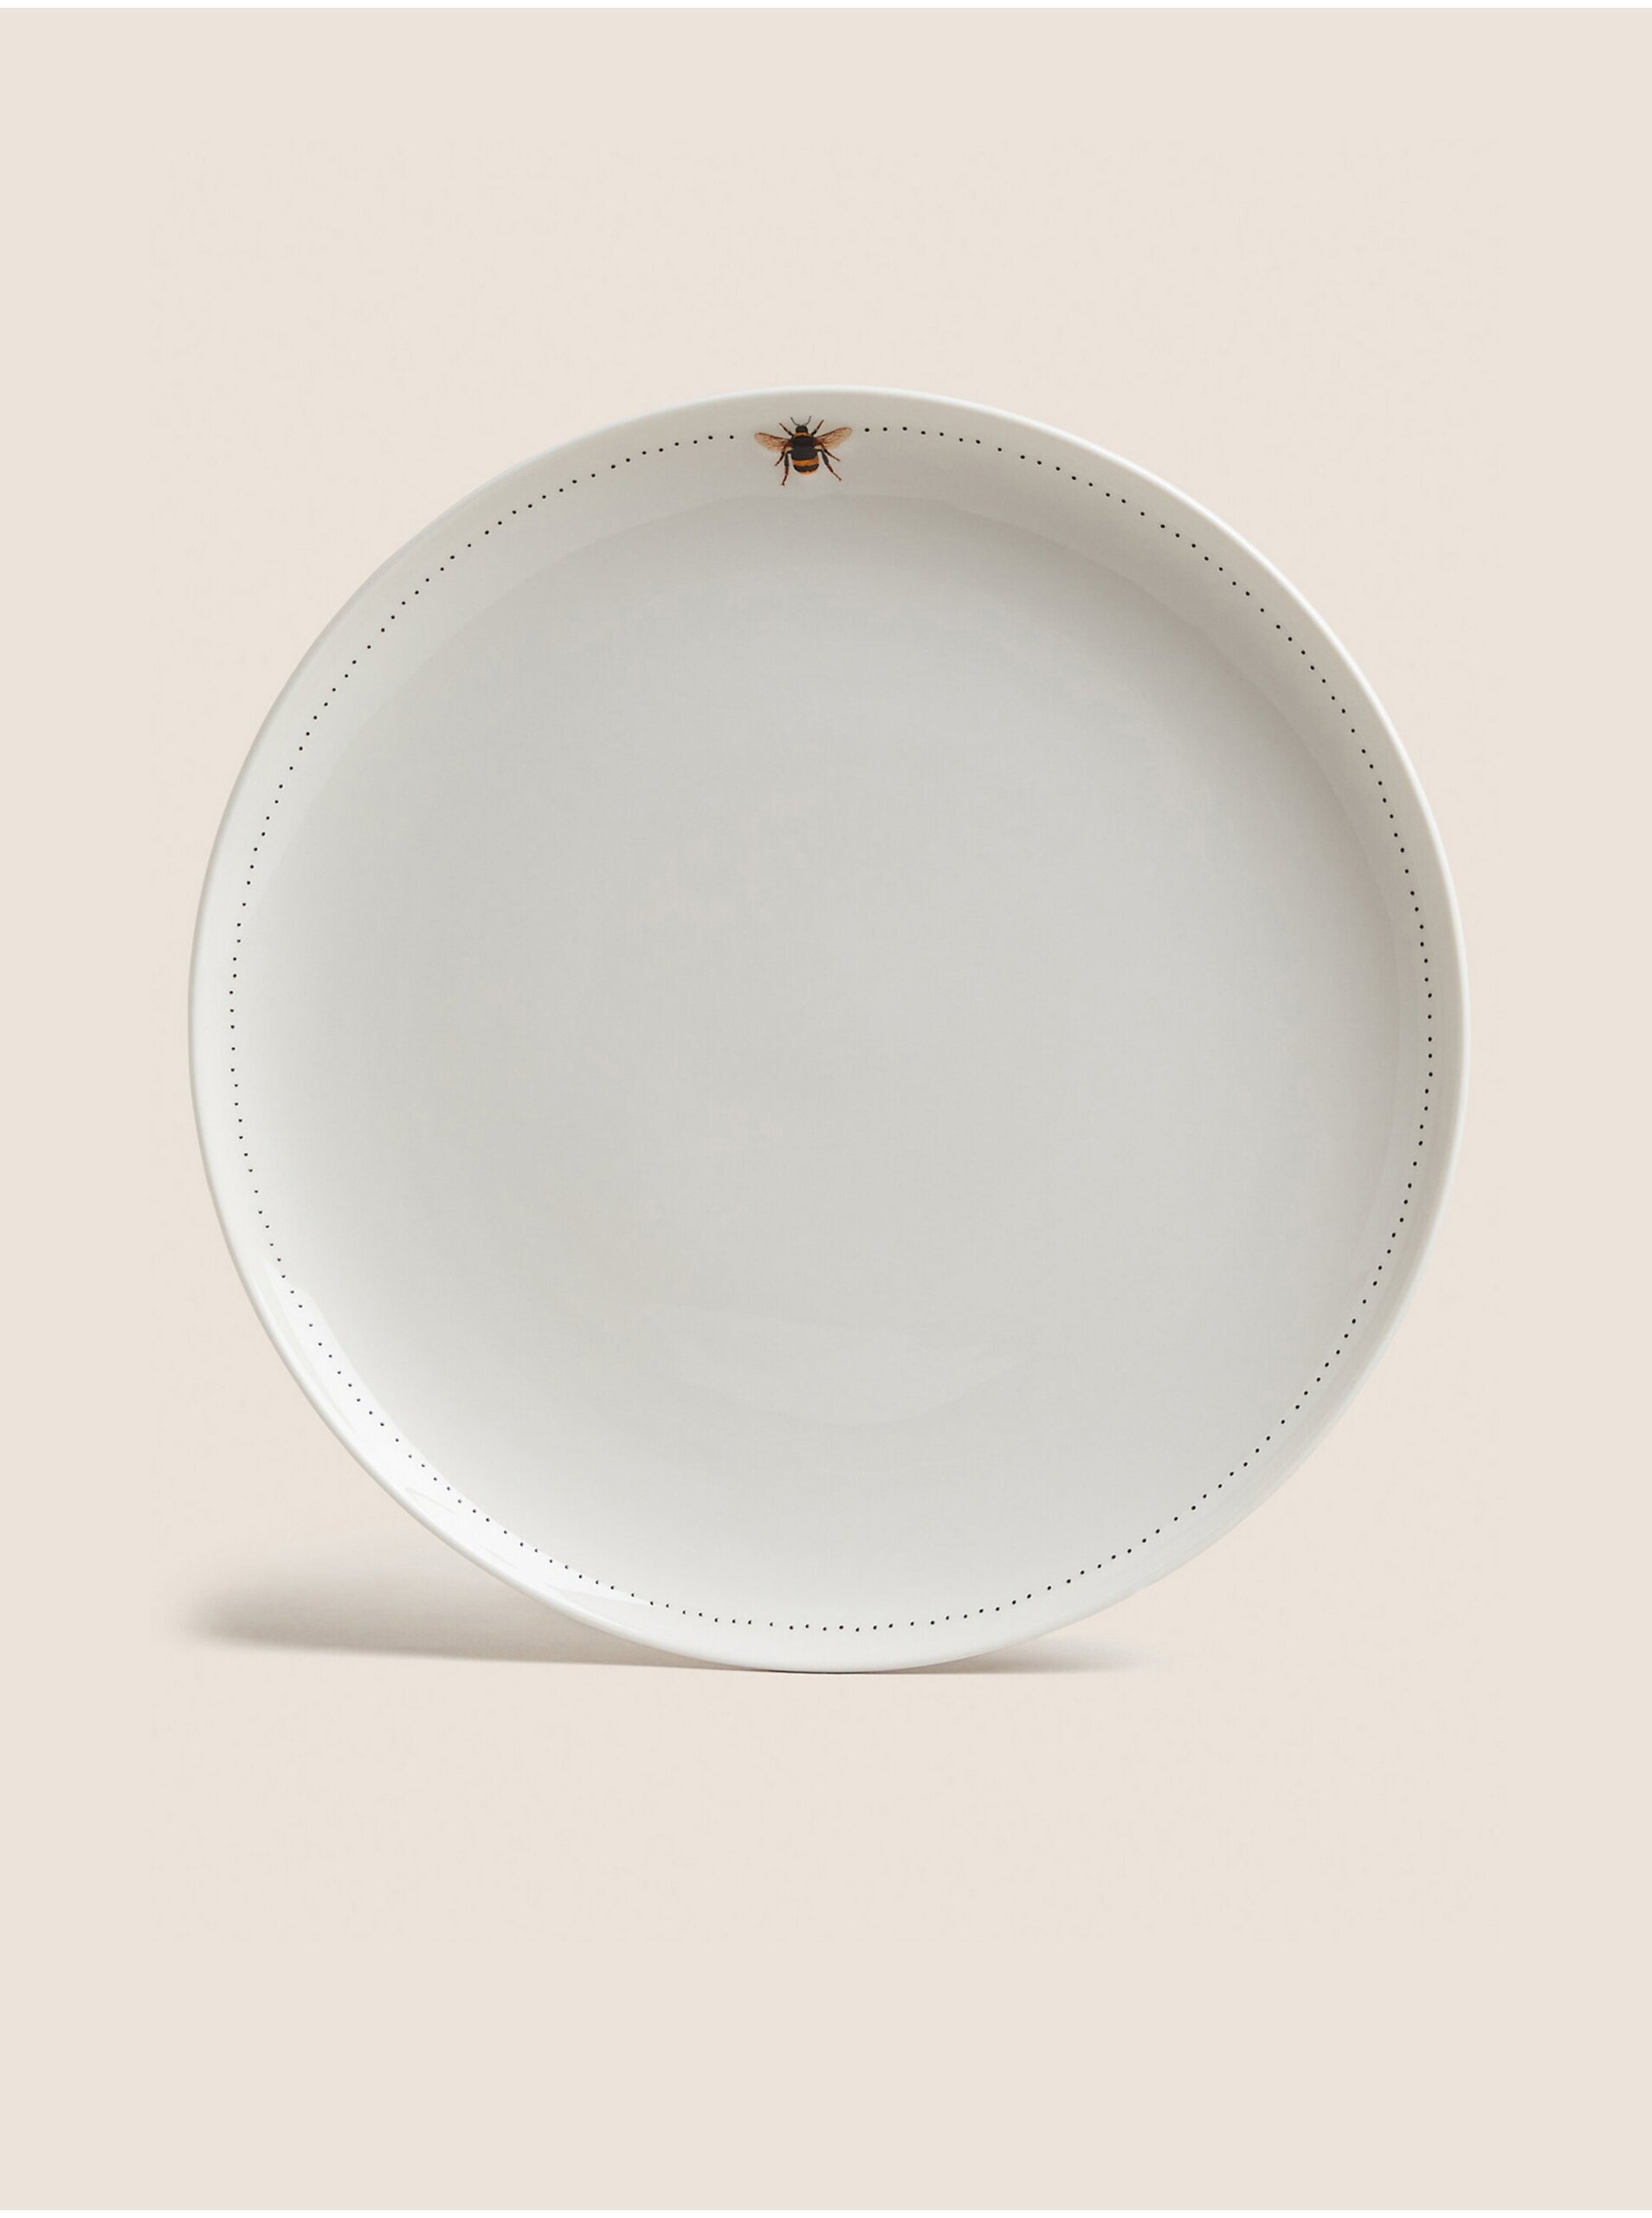 Lacno Súprava dvoch plytkých tanierov s motivom včely v bielej farbe Marks & Spencer